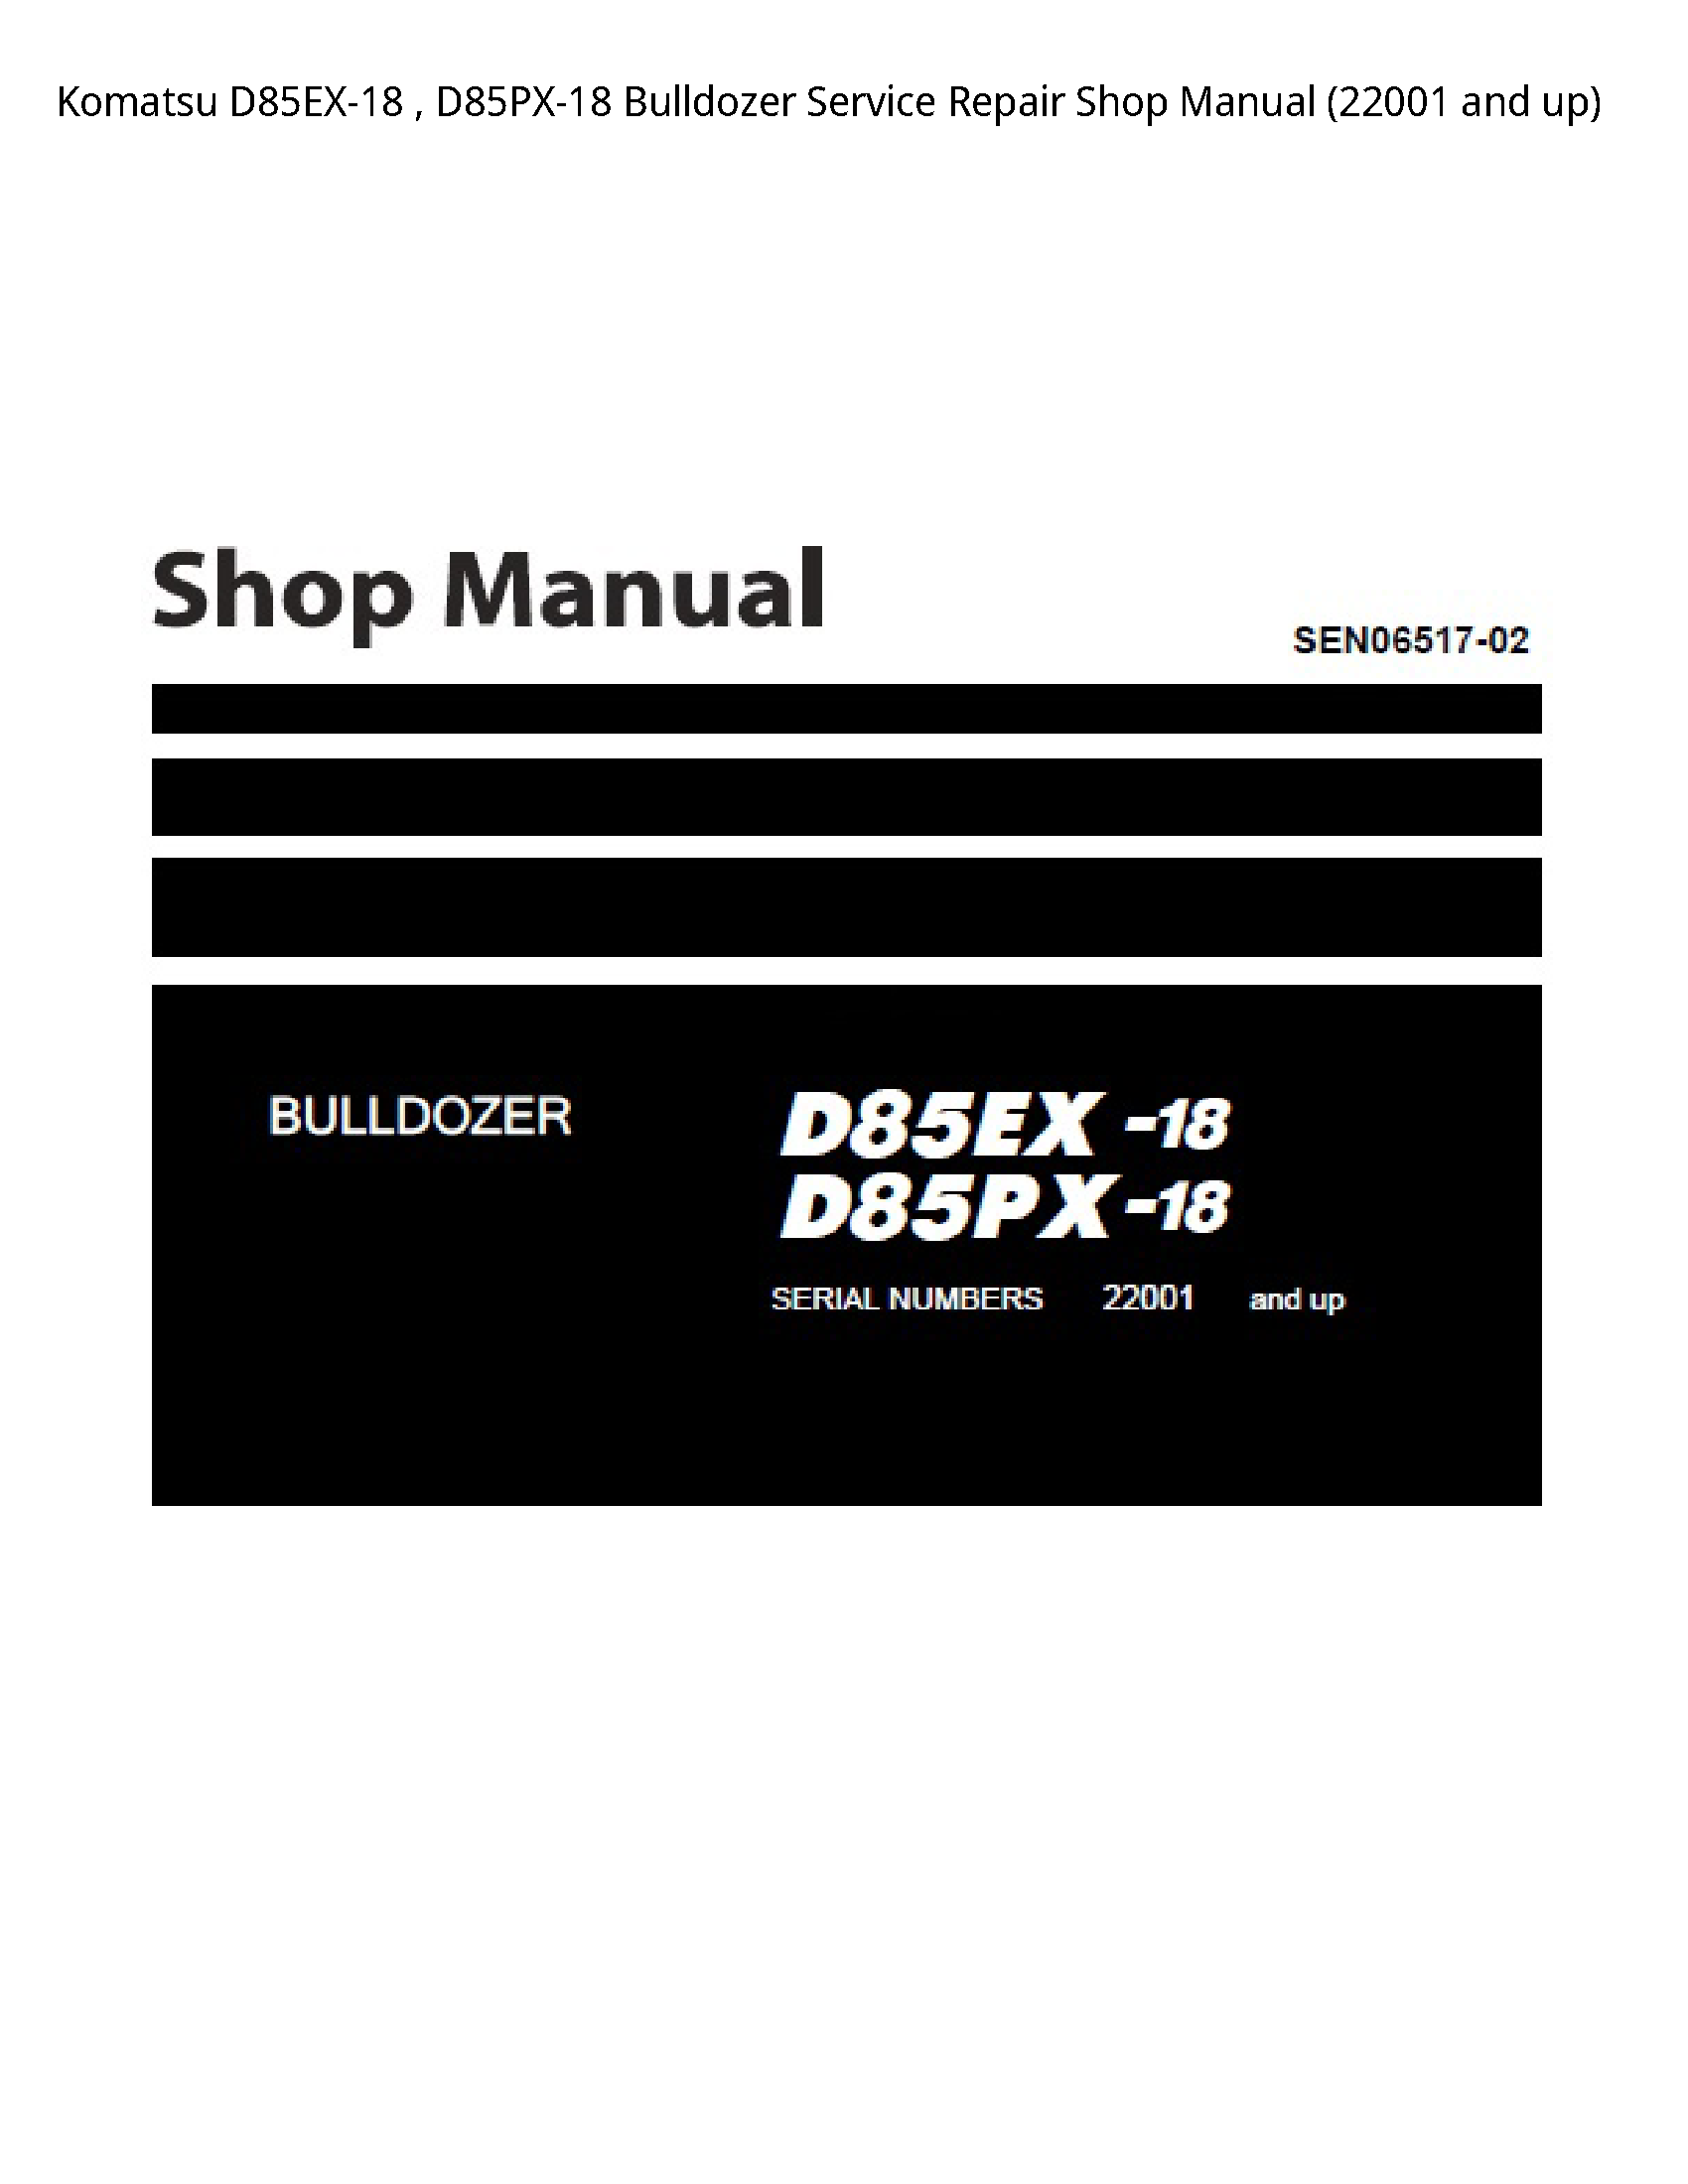 KOMATSU D85EX-18 Bulldozer manual